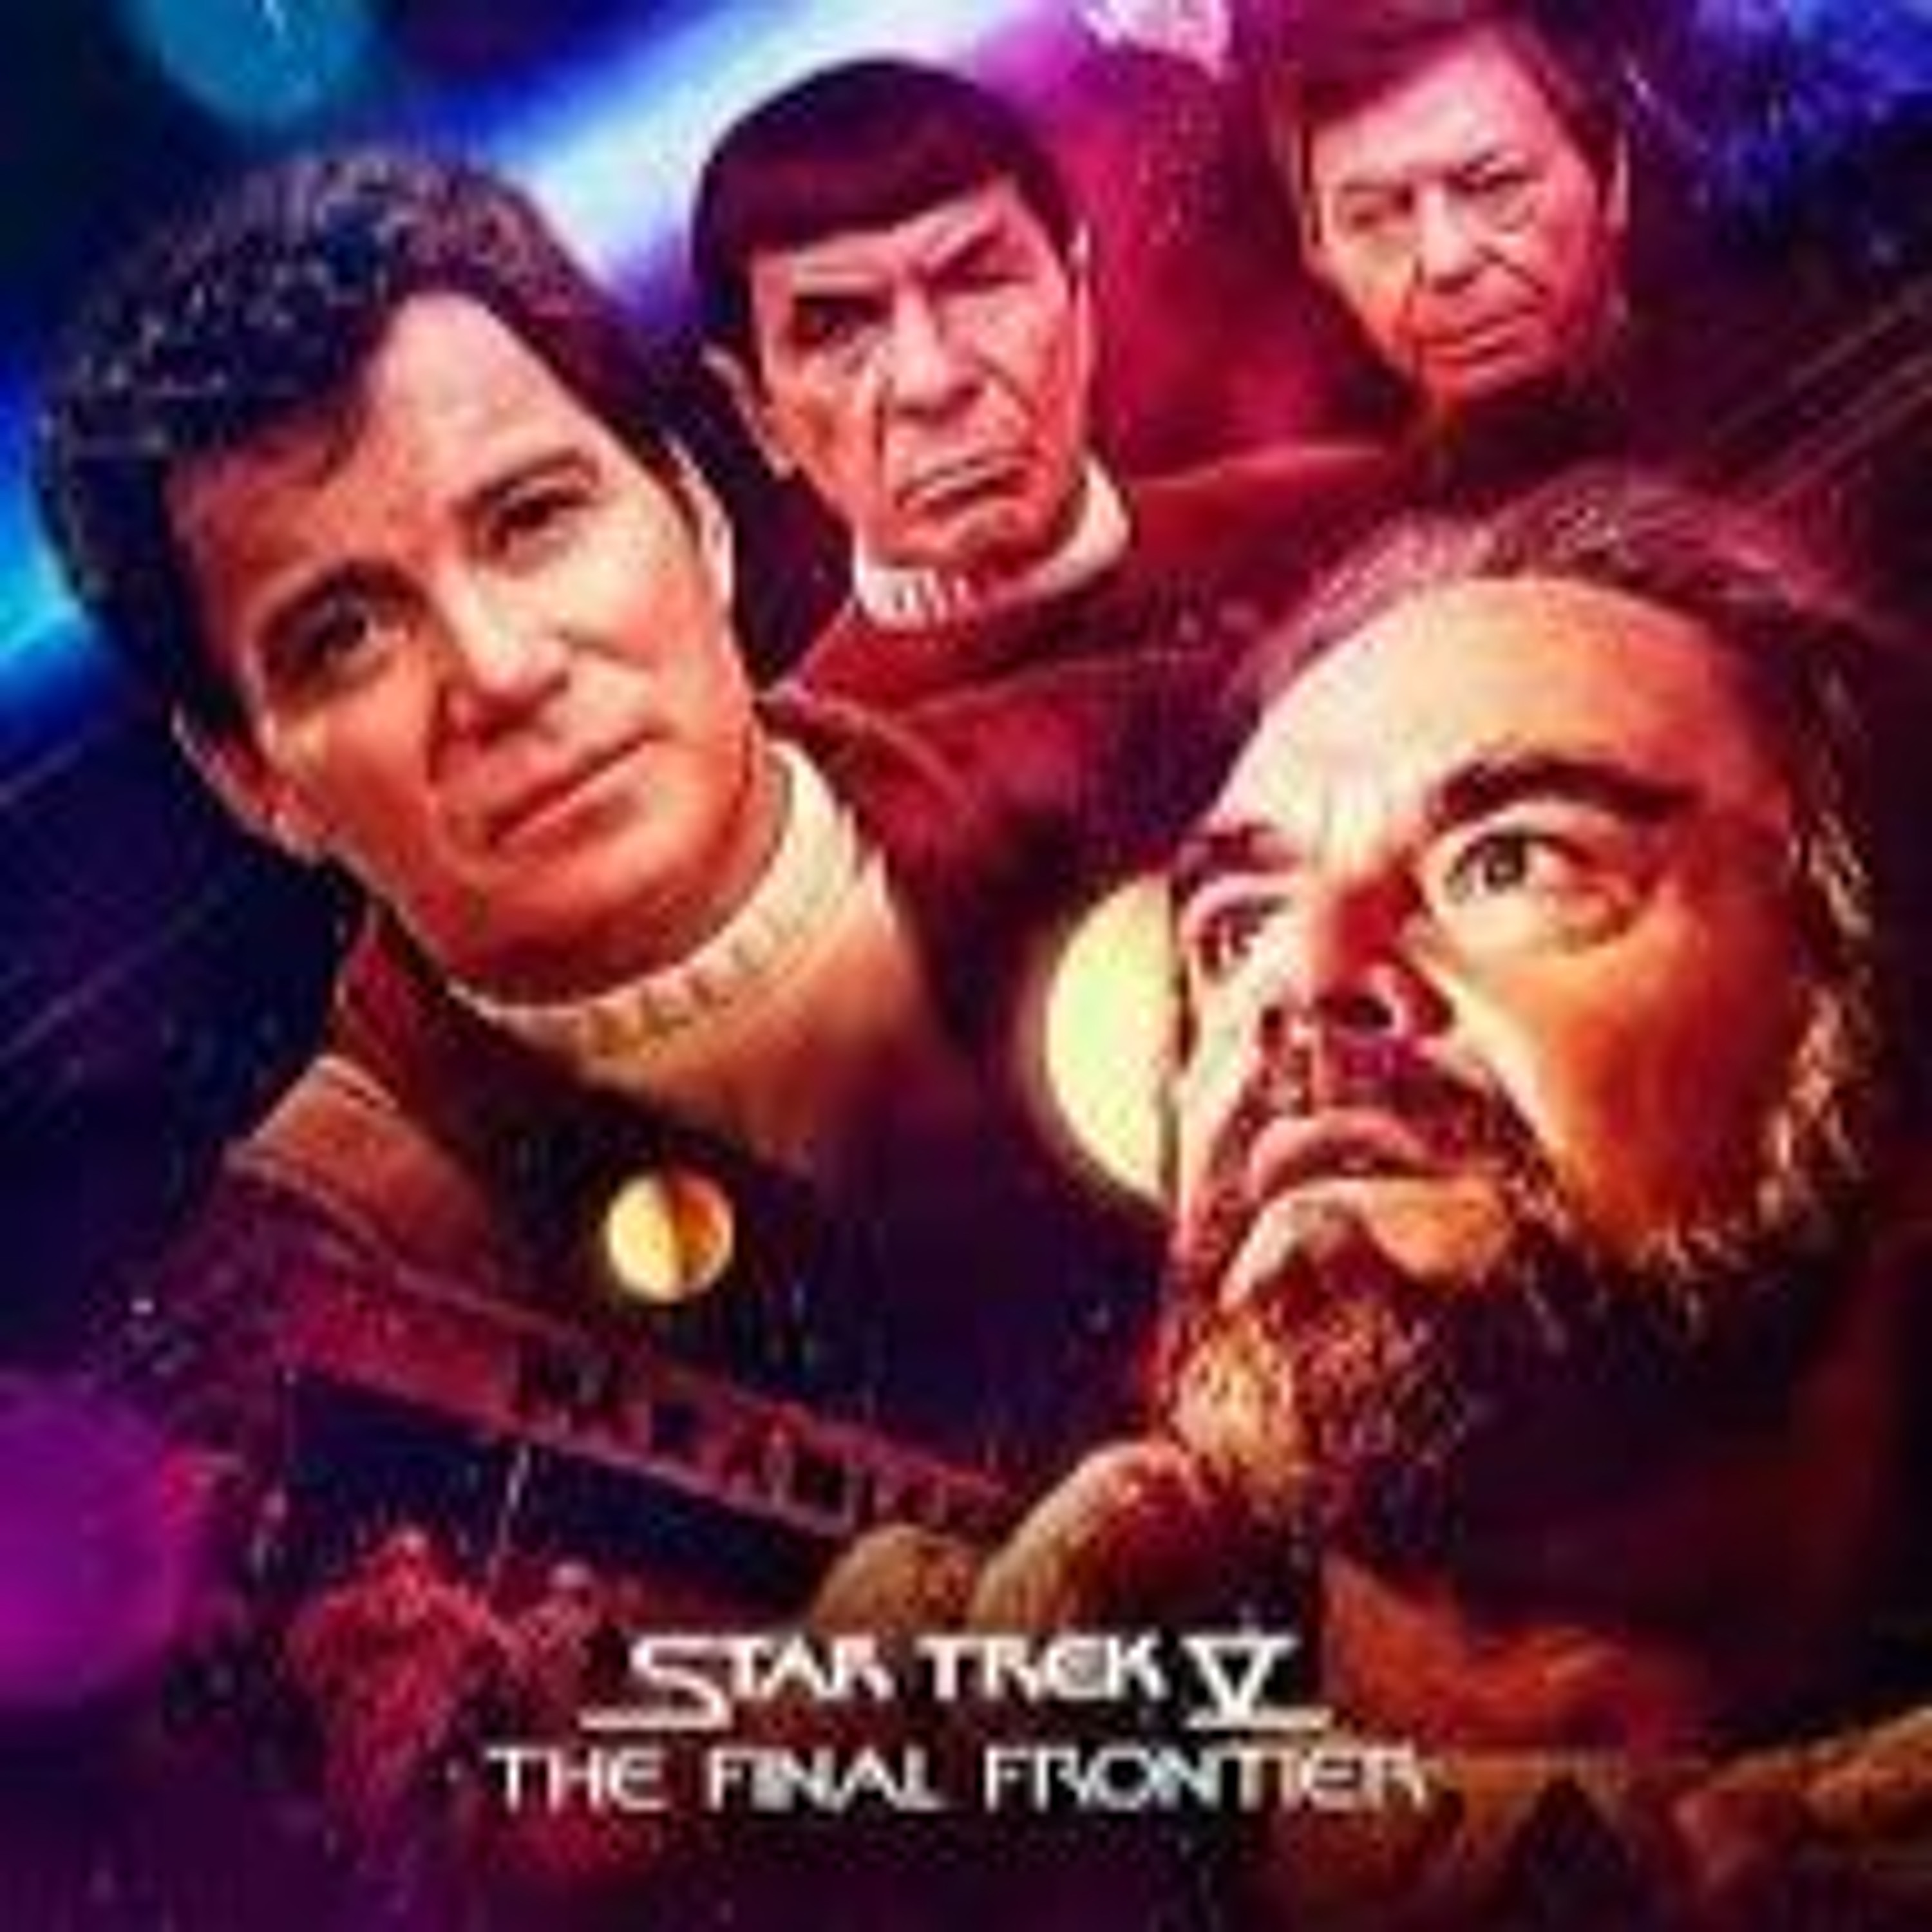 START TREK - Star Trek V: The Final Frontier